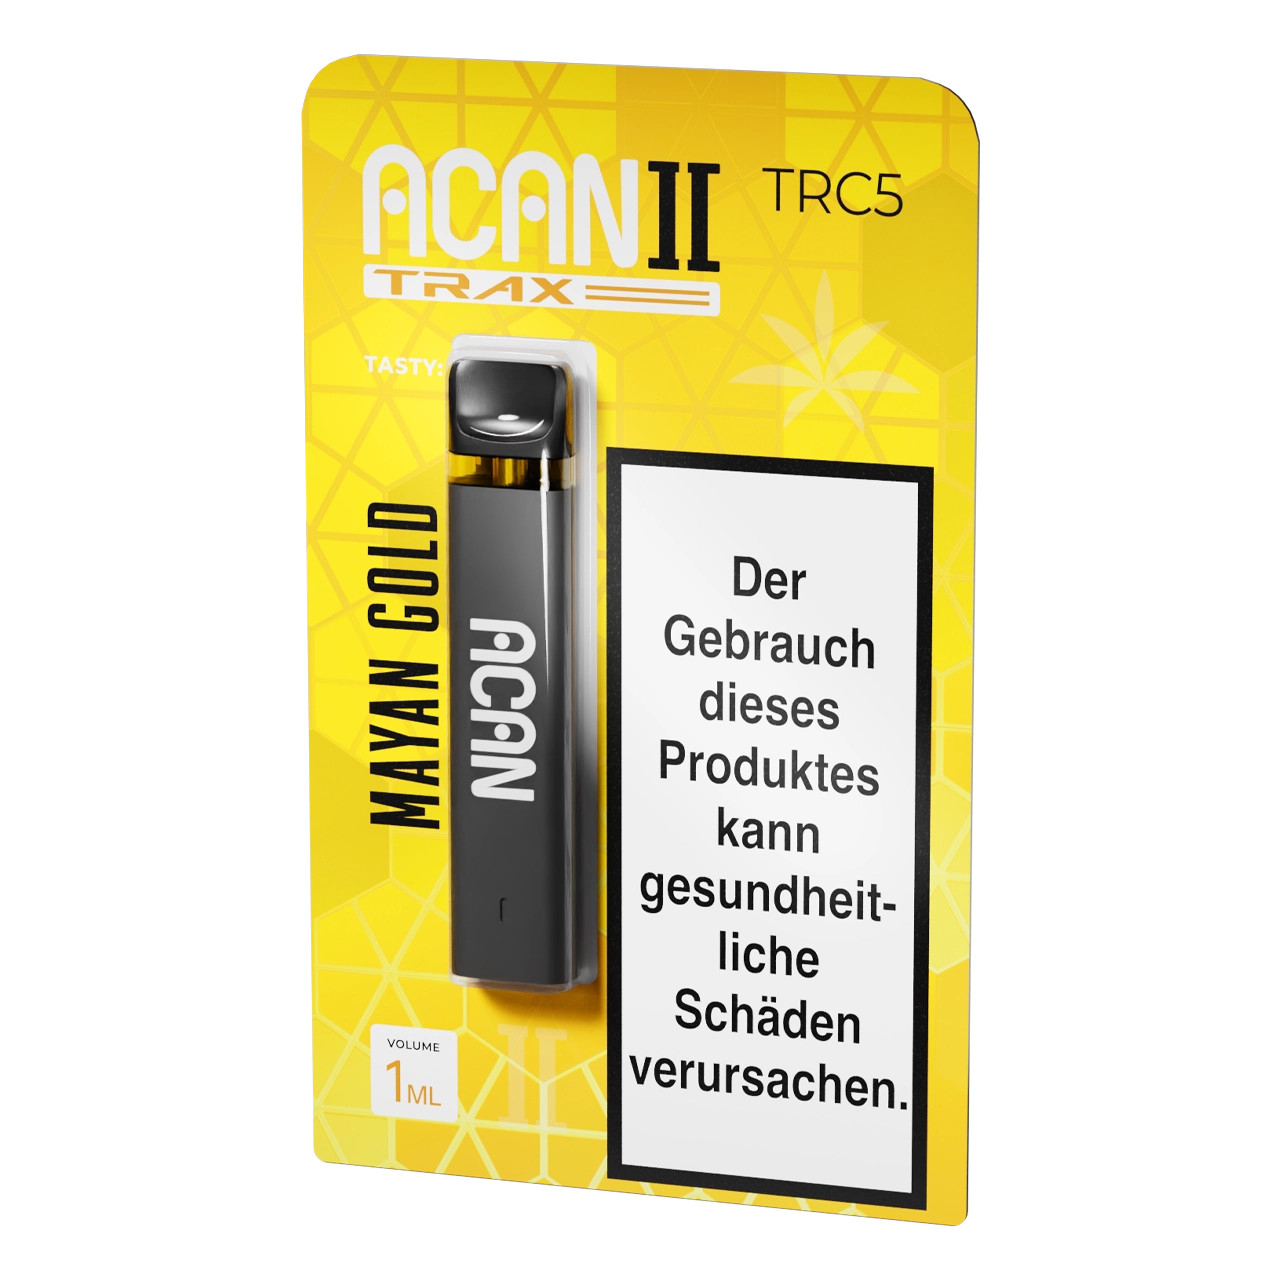 Acan Trax TRC5 Vape Einweg E-Zigarette Mayan Gold - 1ml